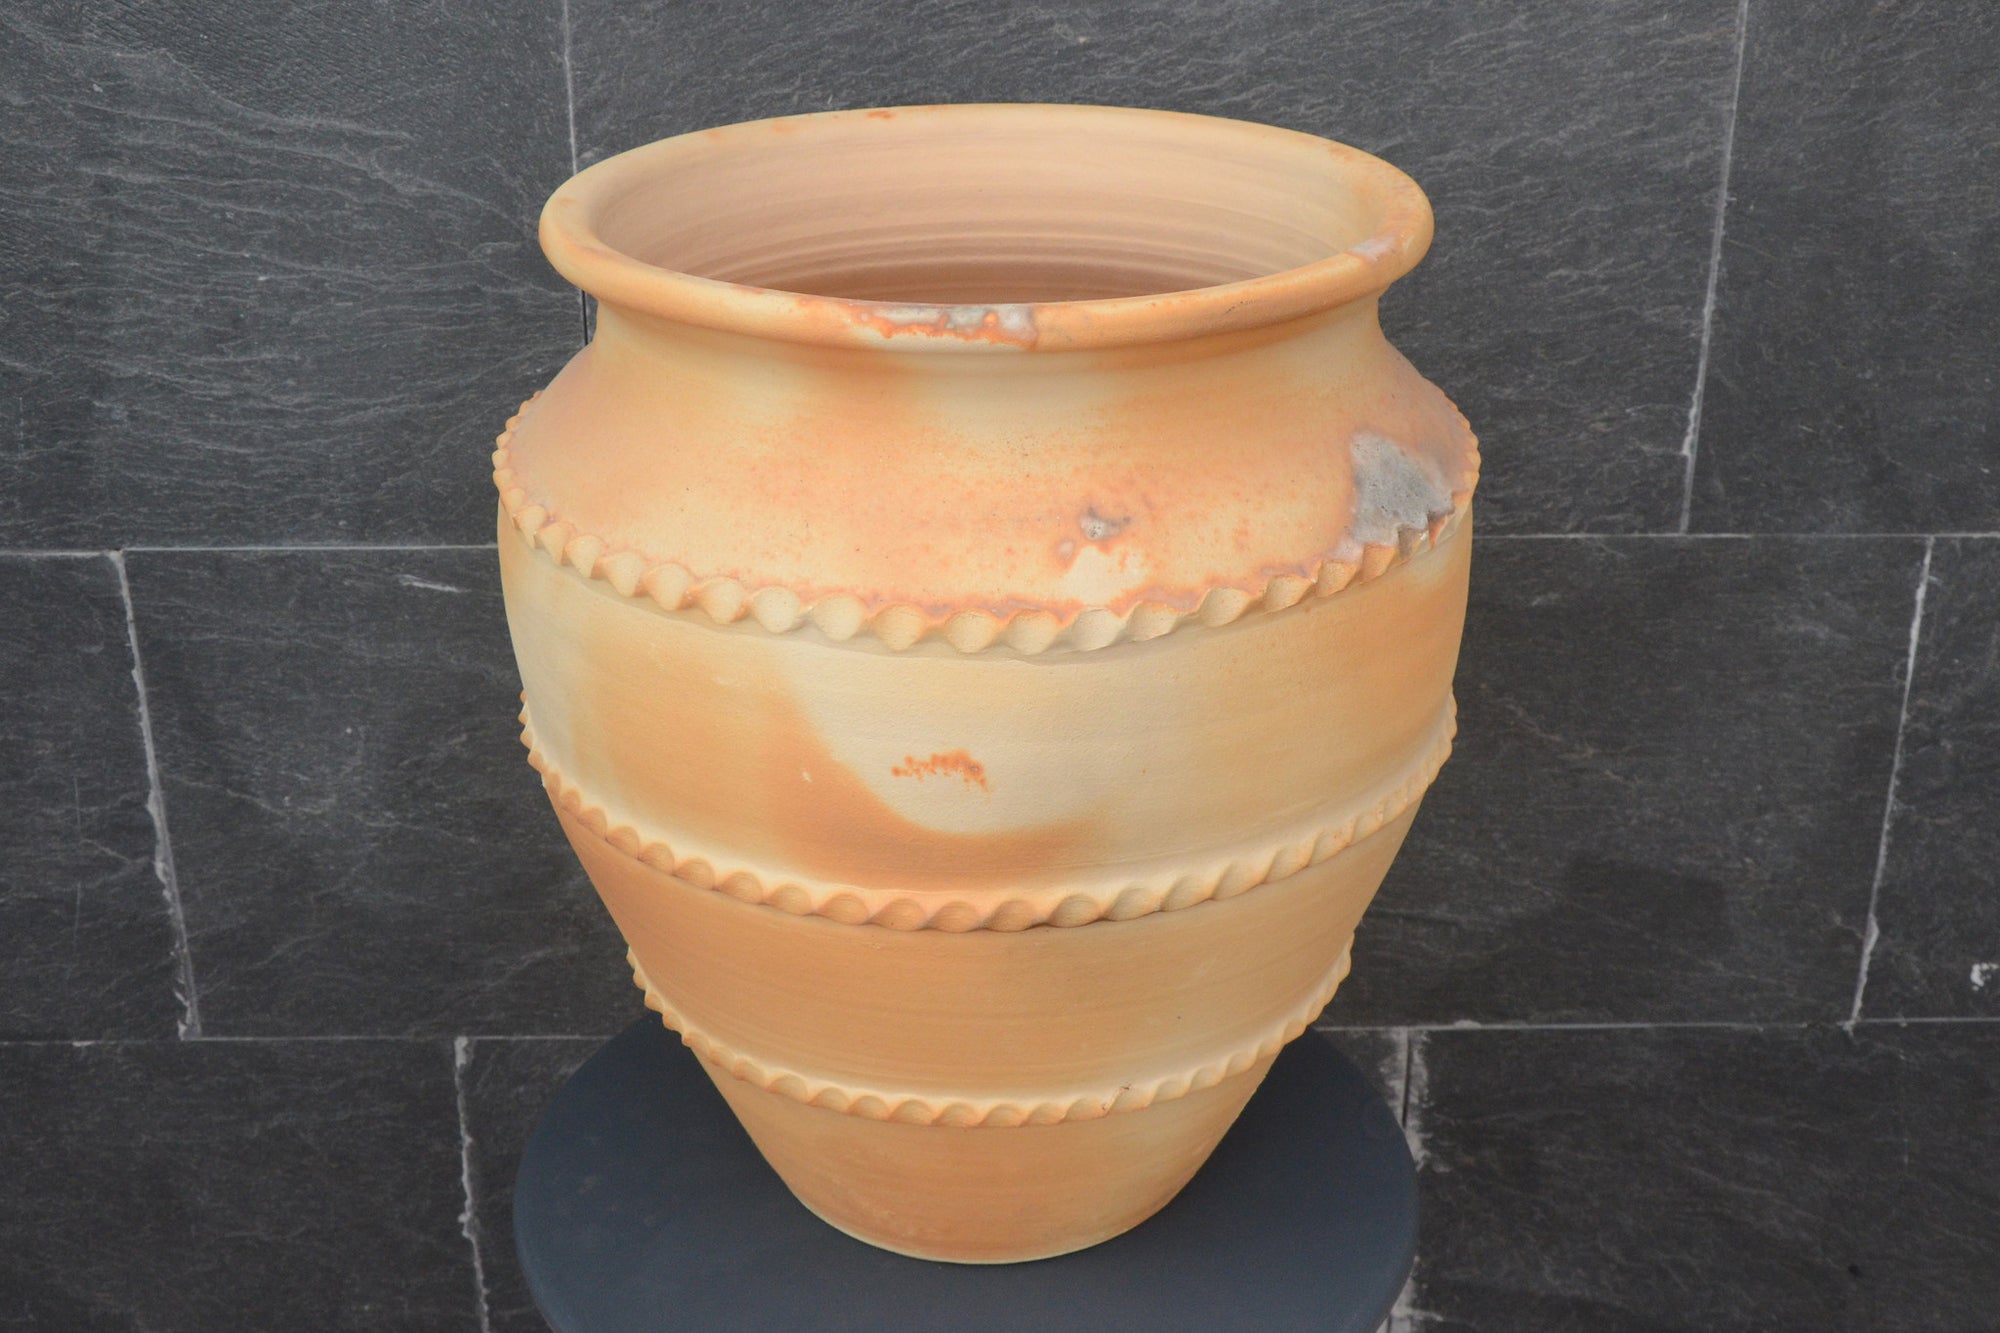 Tinaja (vase) from Moveros, Spain